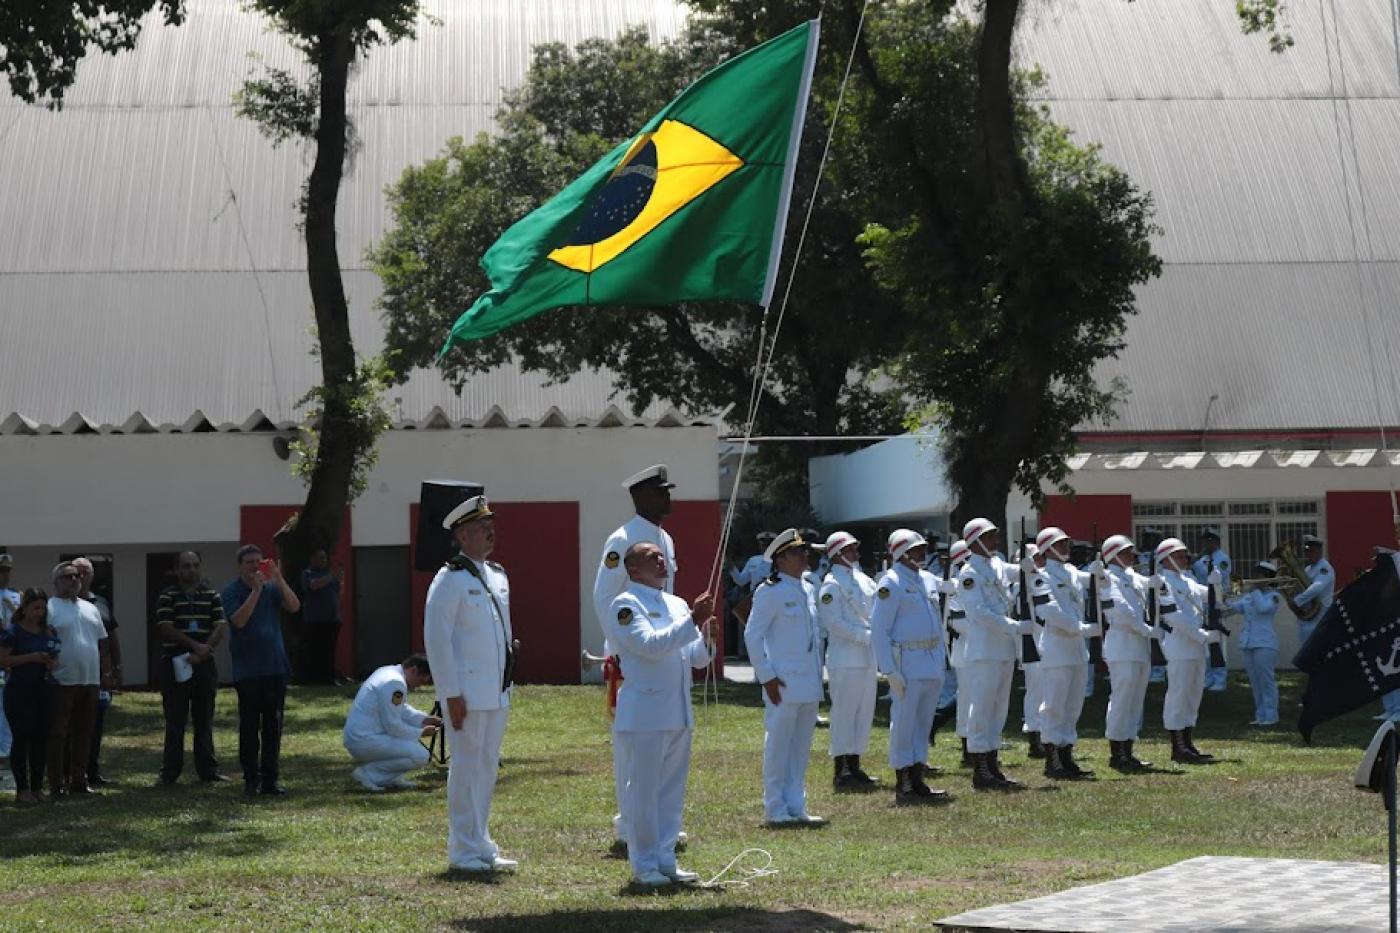 marinheiros uniformizados hasteando a bandeira do brasil ao ar livre sobre um gramado. #paratodosverem 